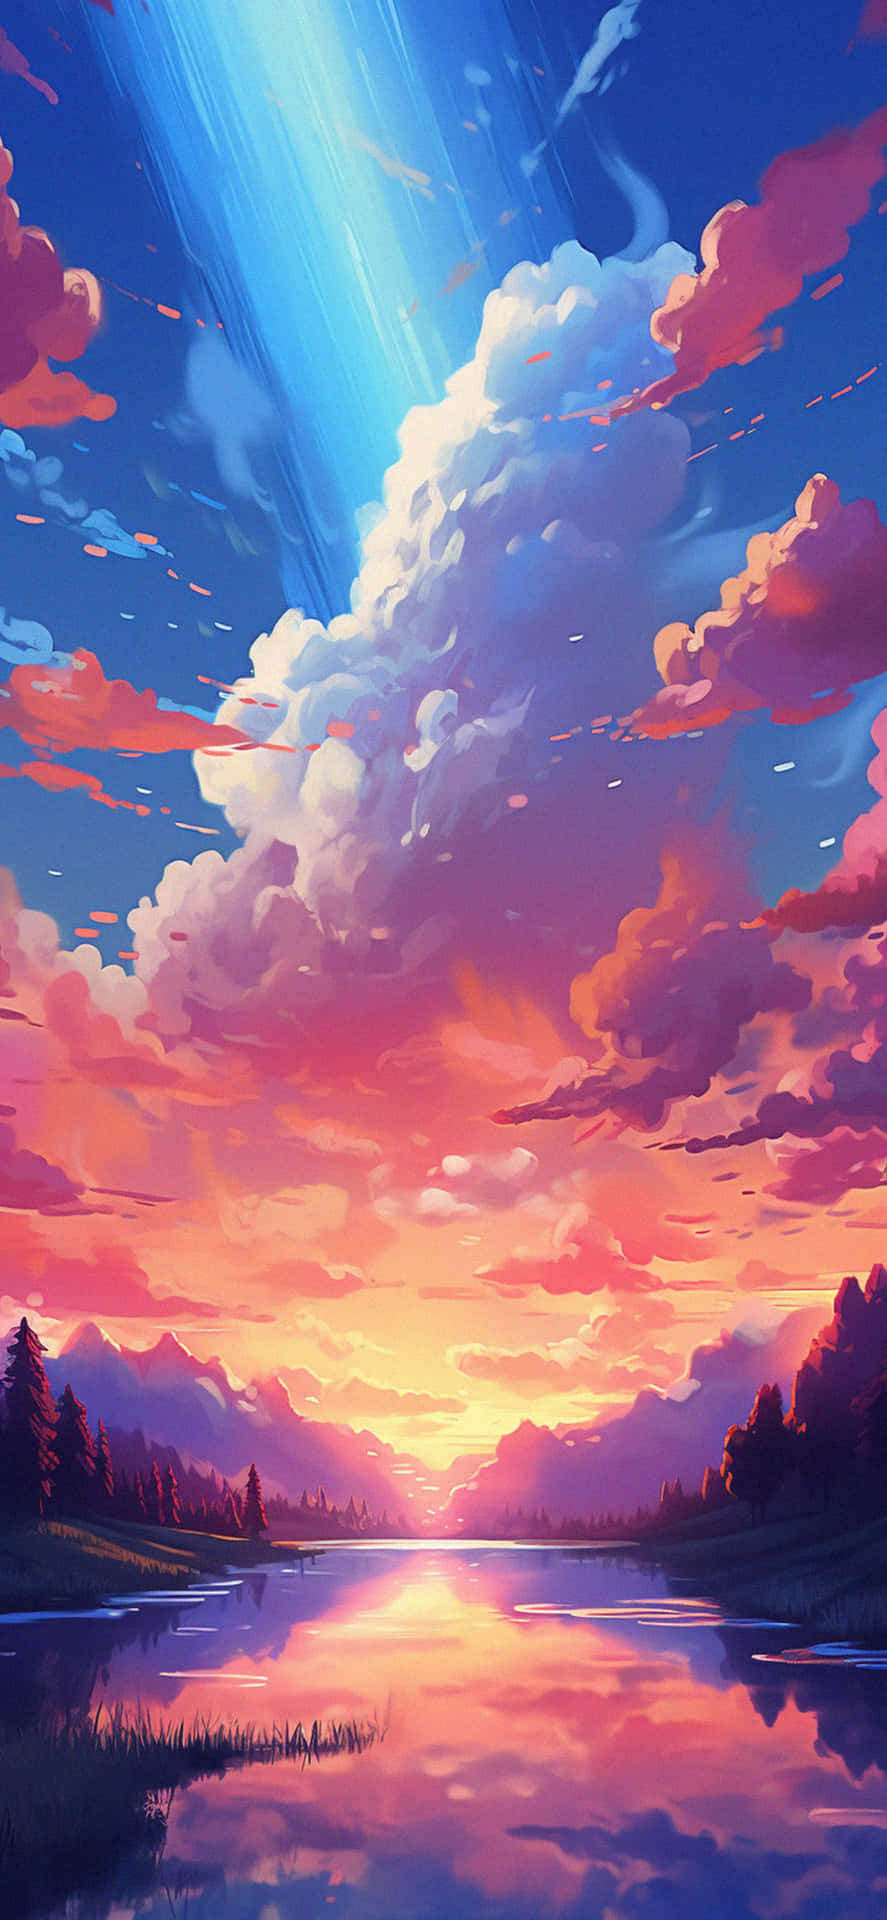 Vibrant Sunset Lake Artwork Wallpaper